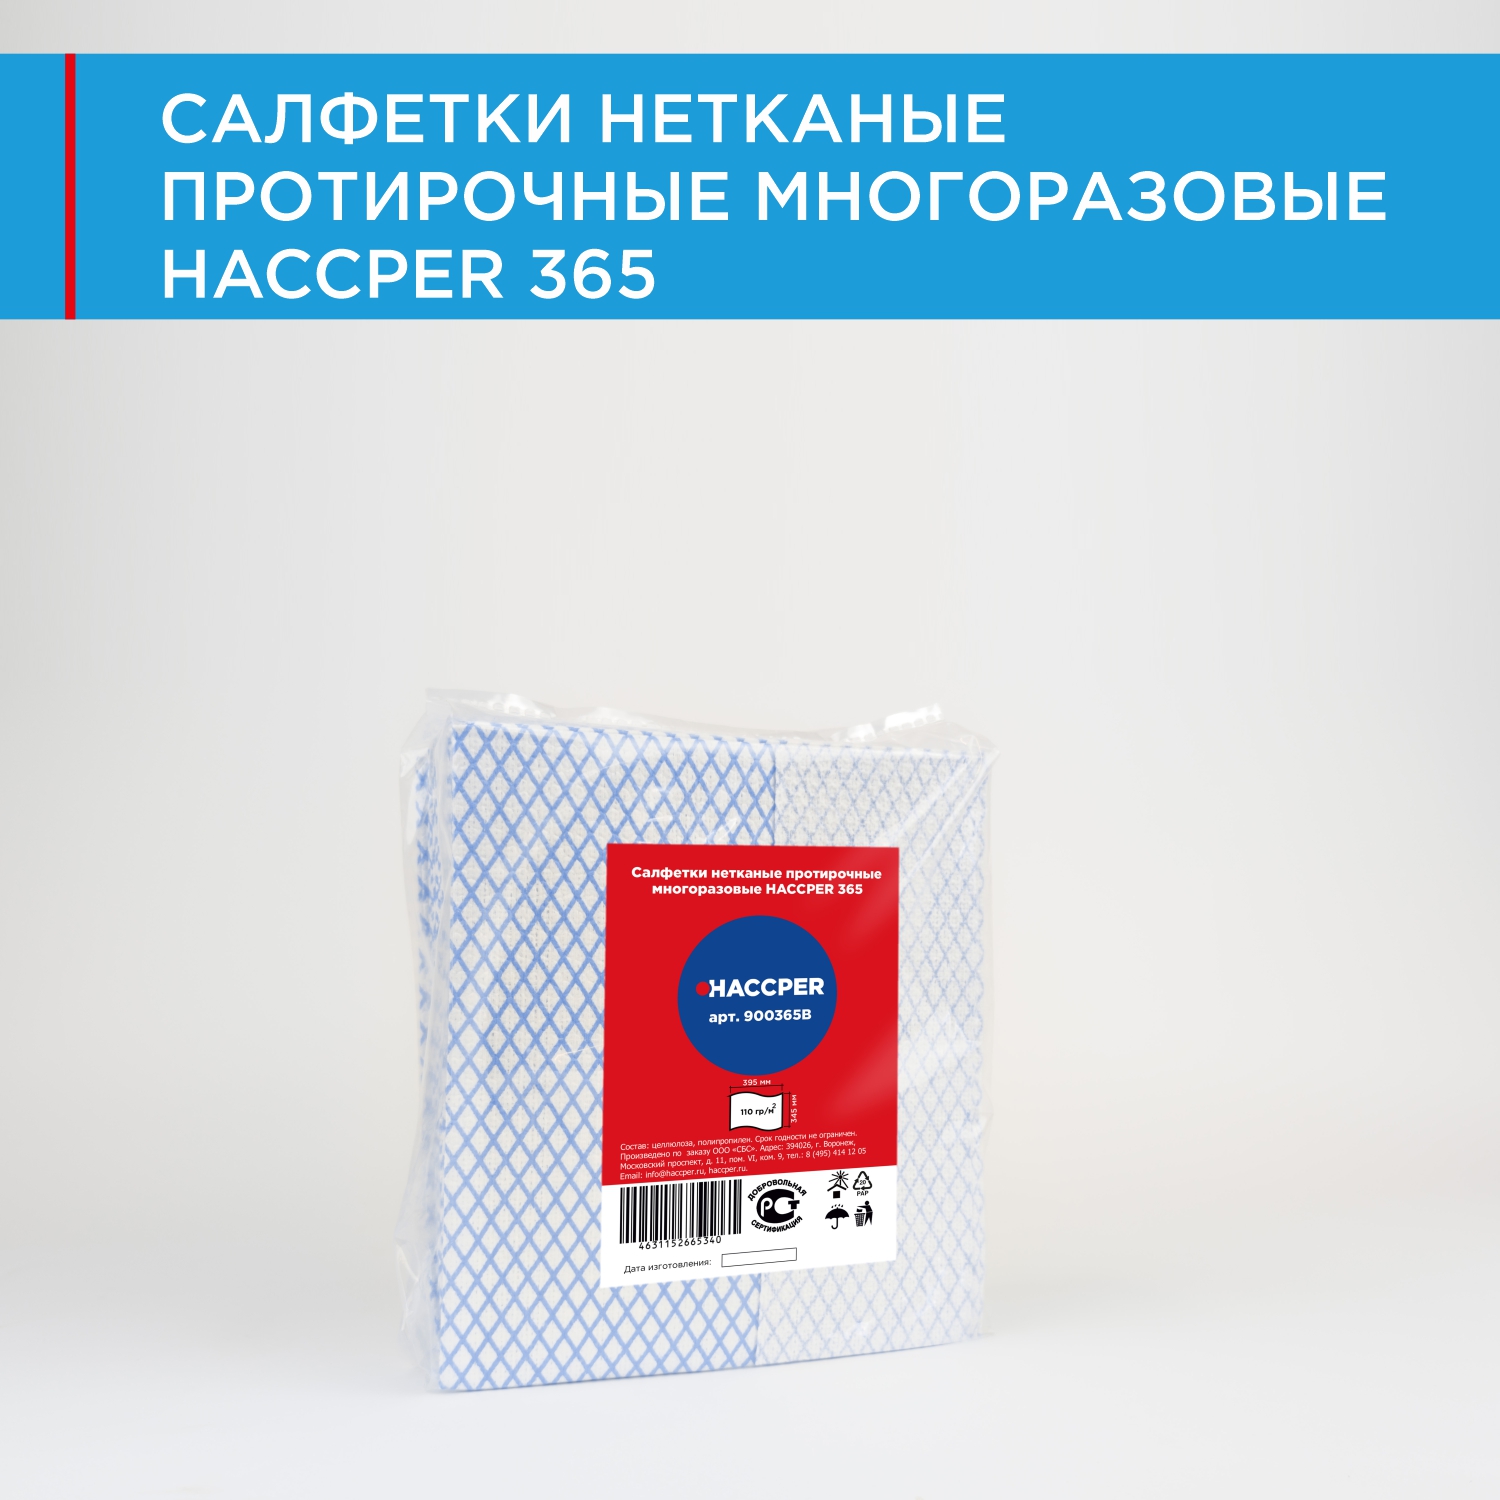 Салфетки нетканые протирочные многоразовые HACCPER 365, 39,5х34,5 см, синие, 25шт/упак